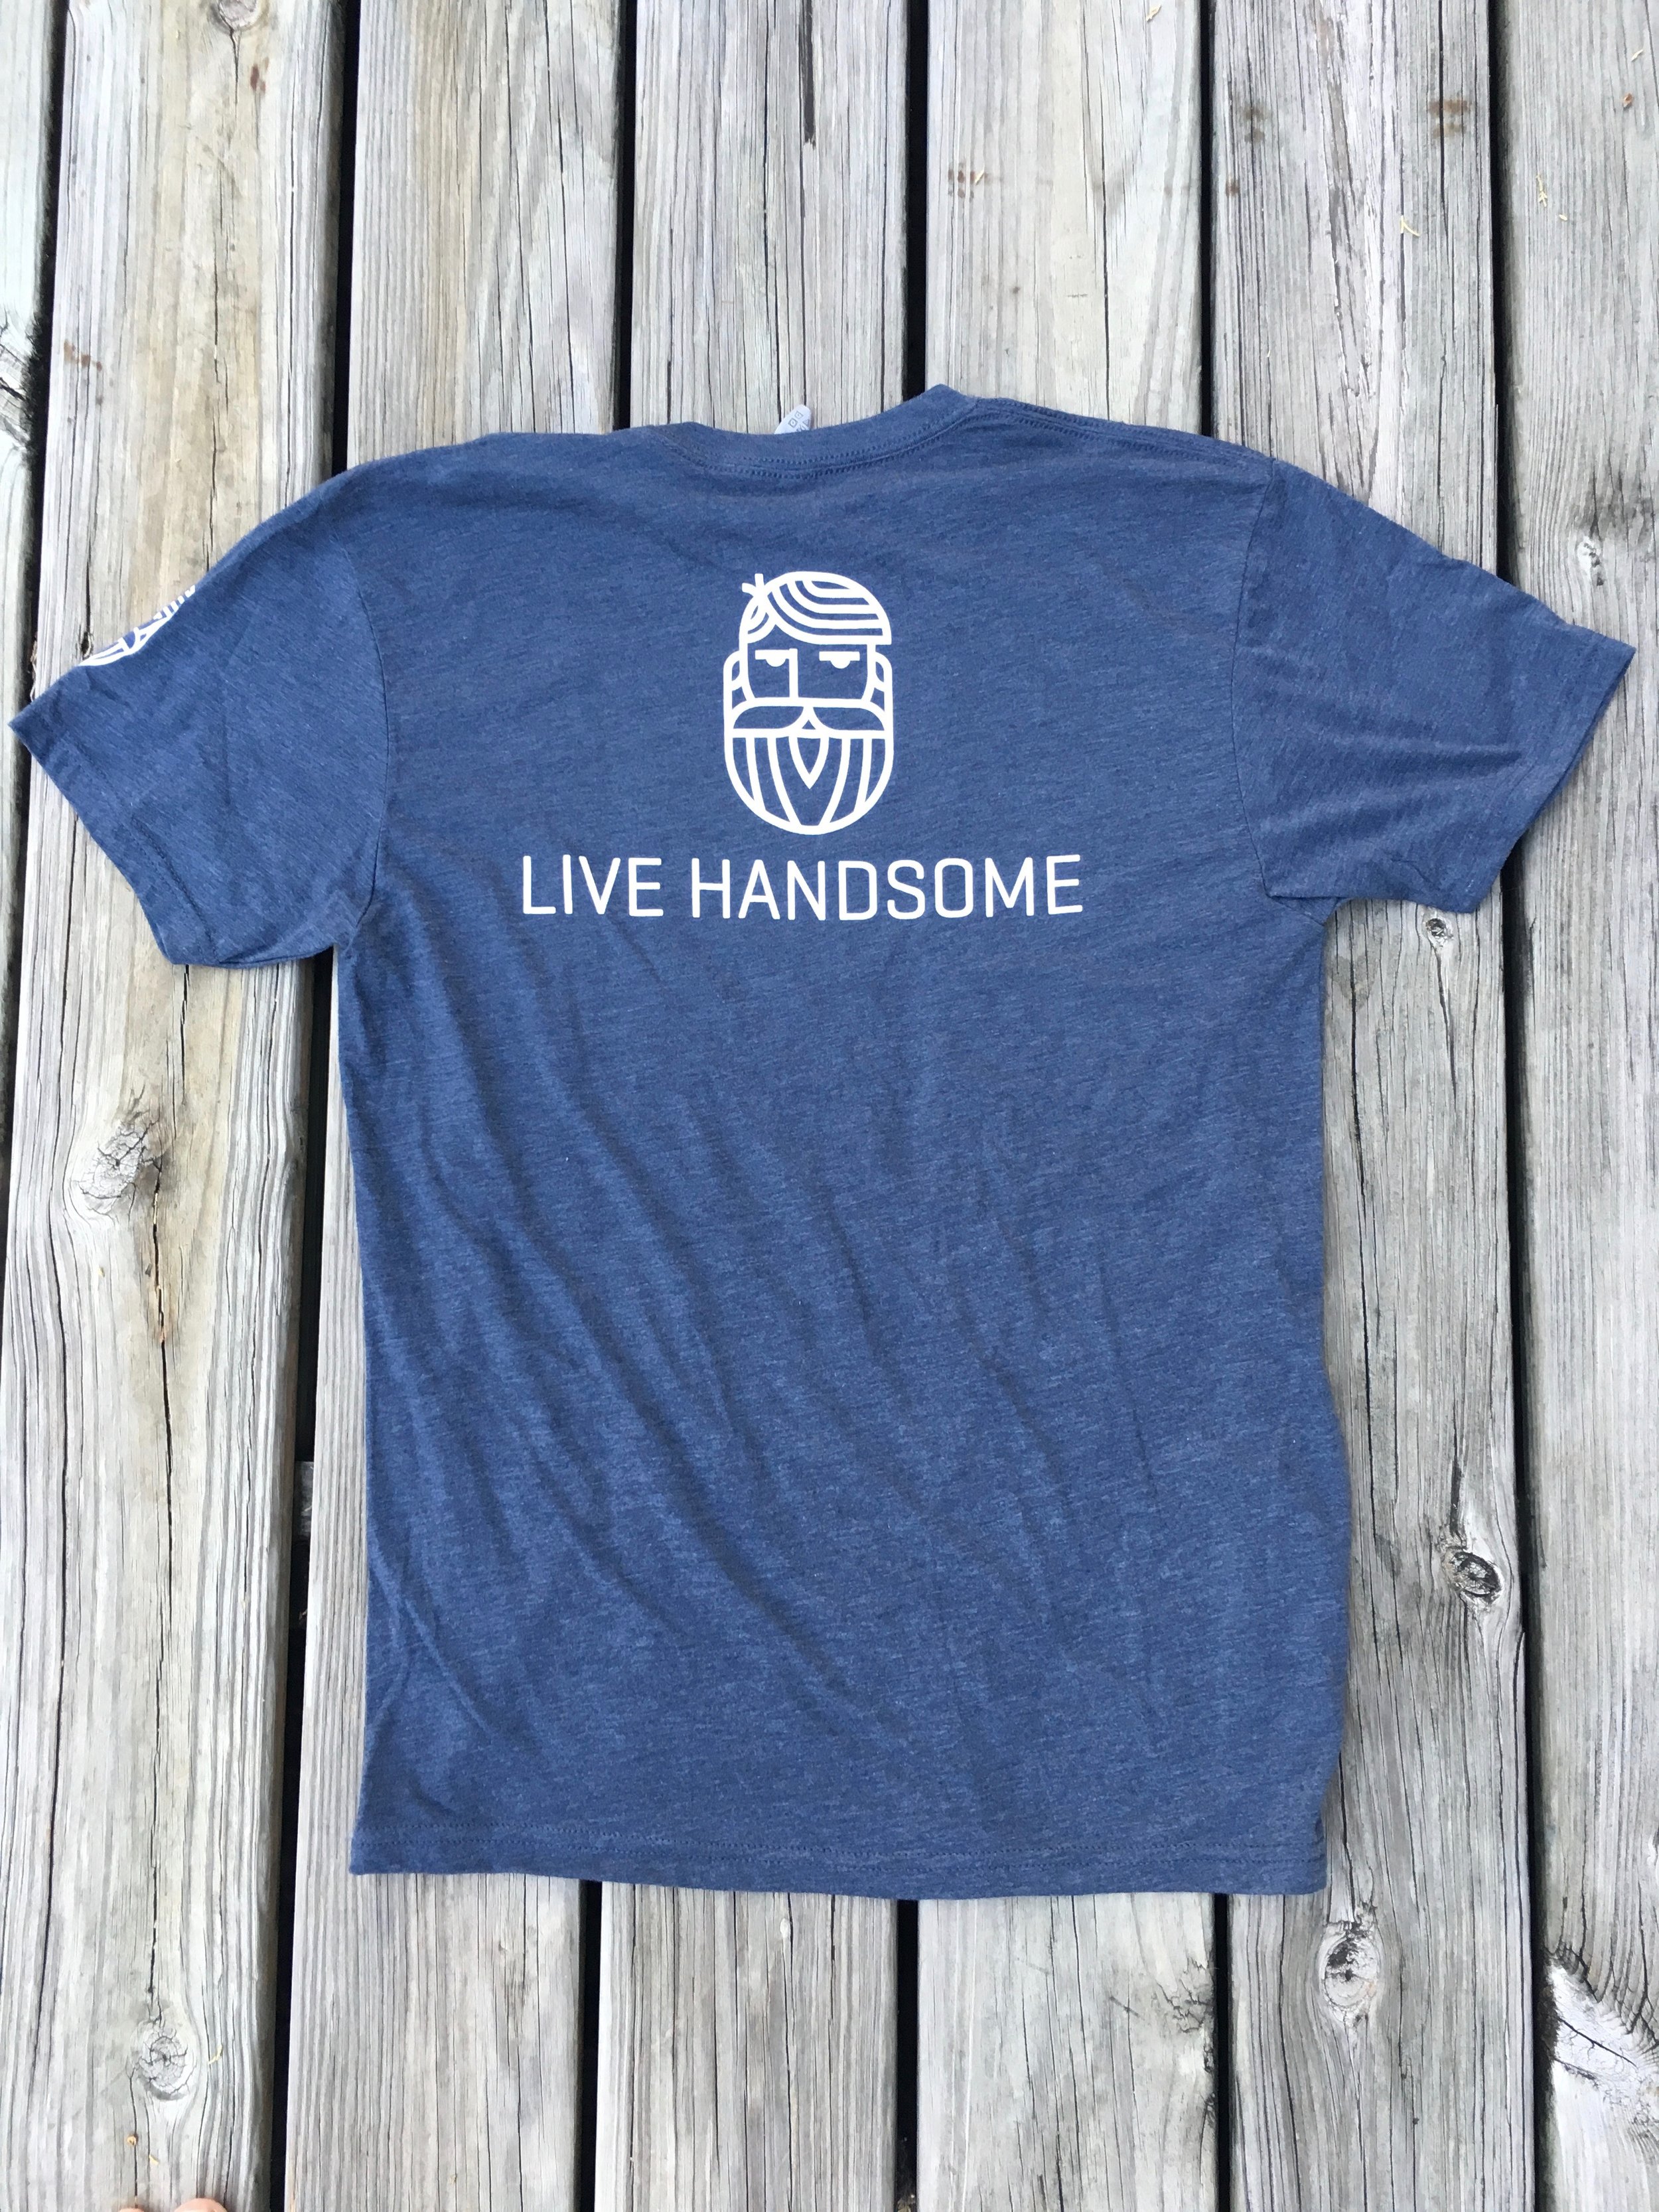 Men's Live Handsome shirt